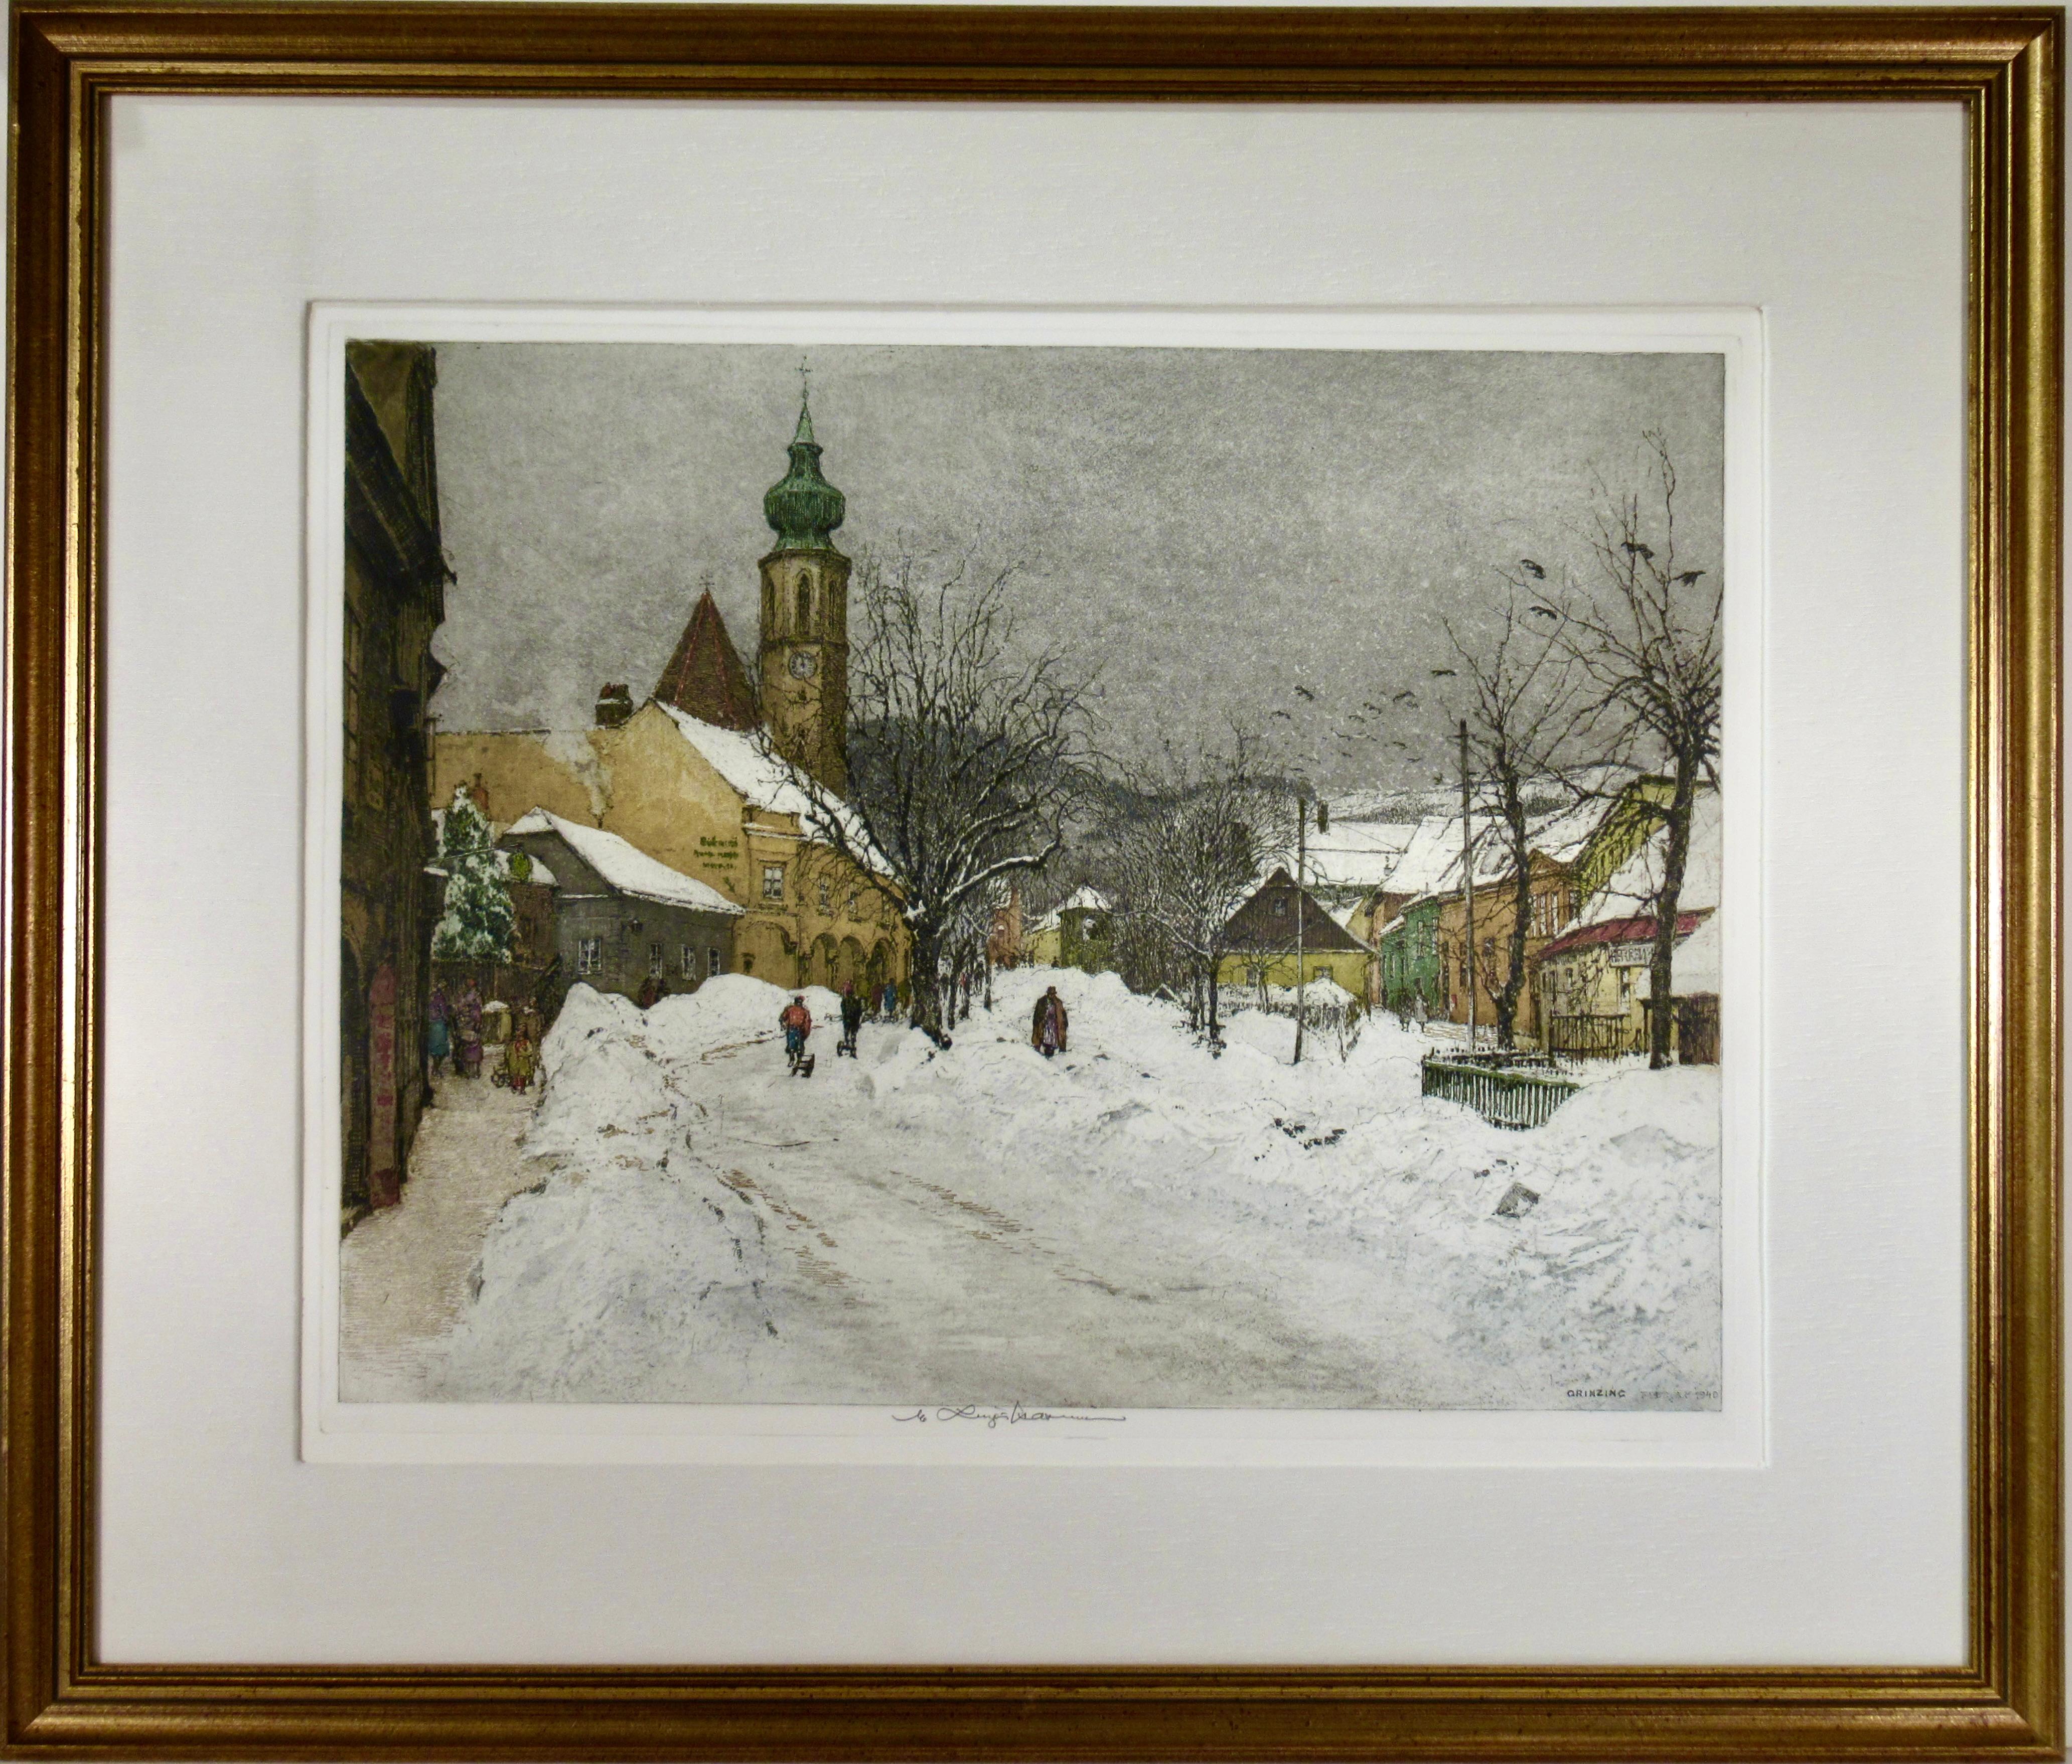 Luigi Kasimir Landscape Print - Grinzing, Snow Scene, Austria, large color etching